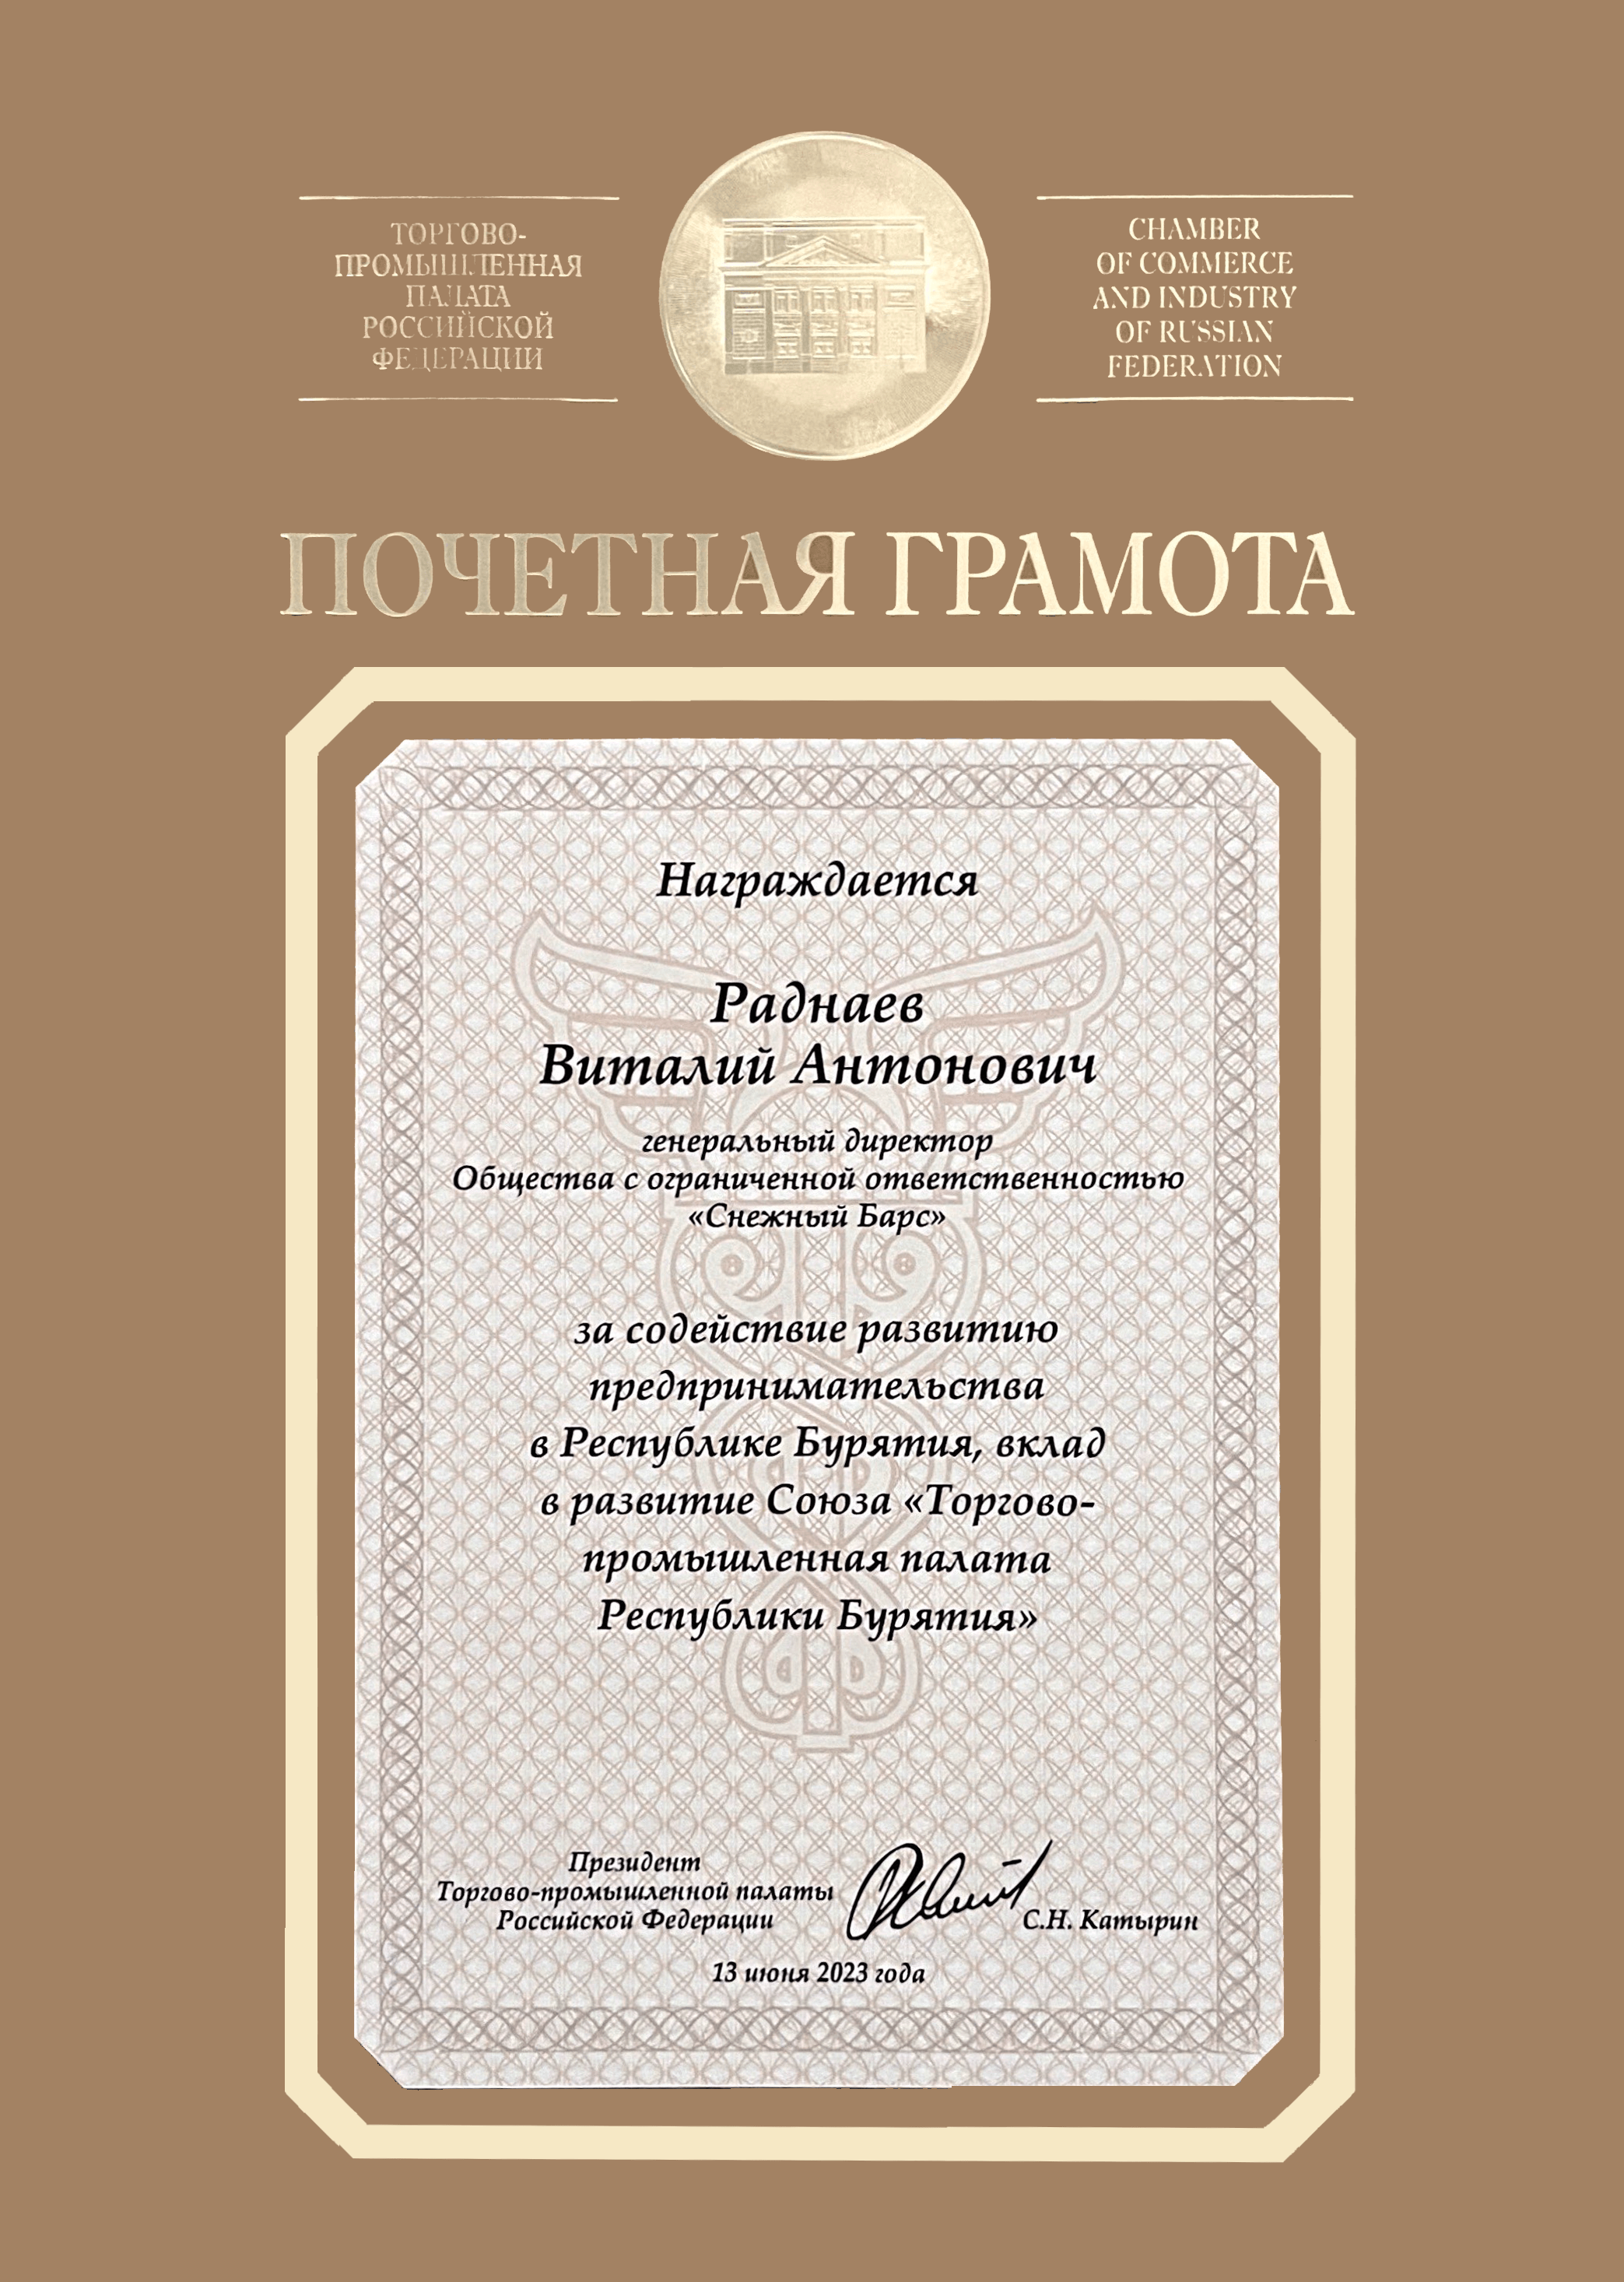 Почетная грамота от Торгово-промышленной палаты РФ за содействие развитию предпринимательства в Республике Бурятия